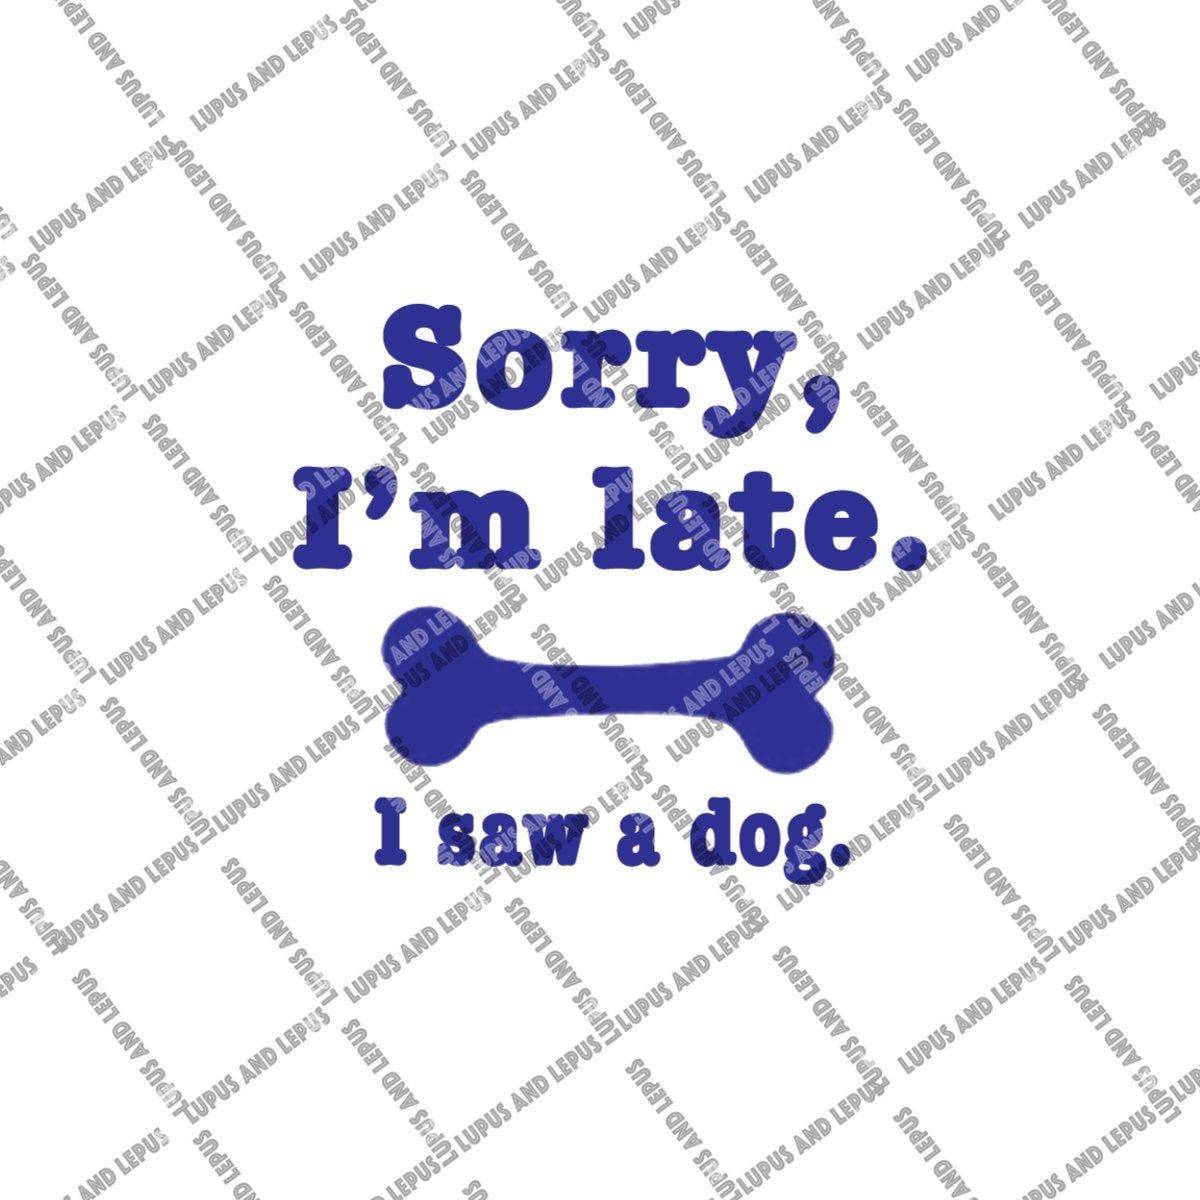 Digital File - Sorry I'm late I saw a dog, Sorry I'm late, dog svg, dog owner svg, dog dad, dog mom, dog lover svg, dog lover gift, k9 svg